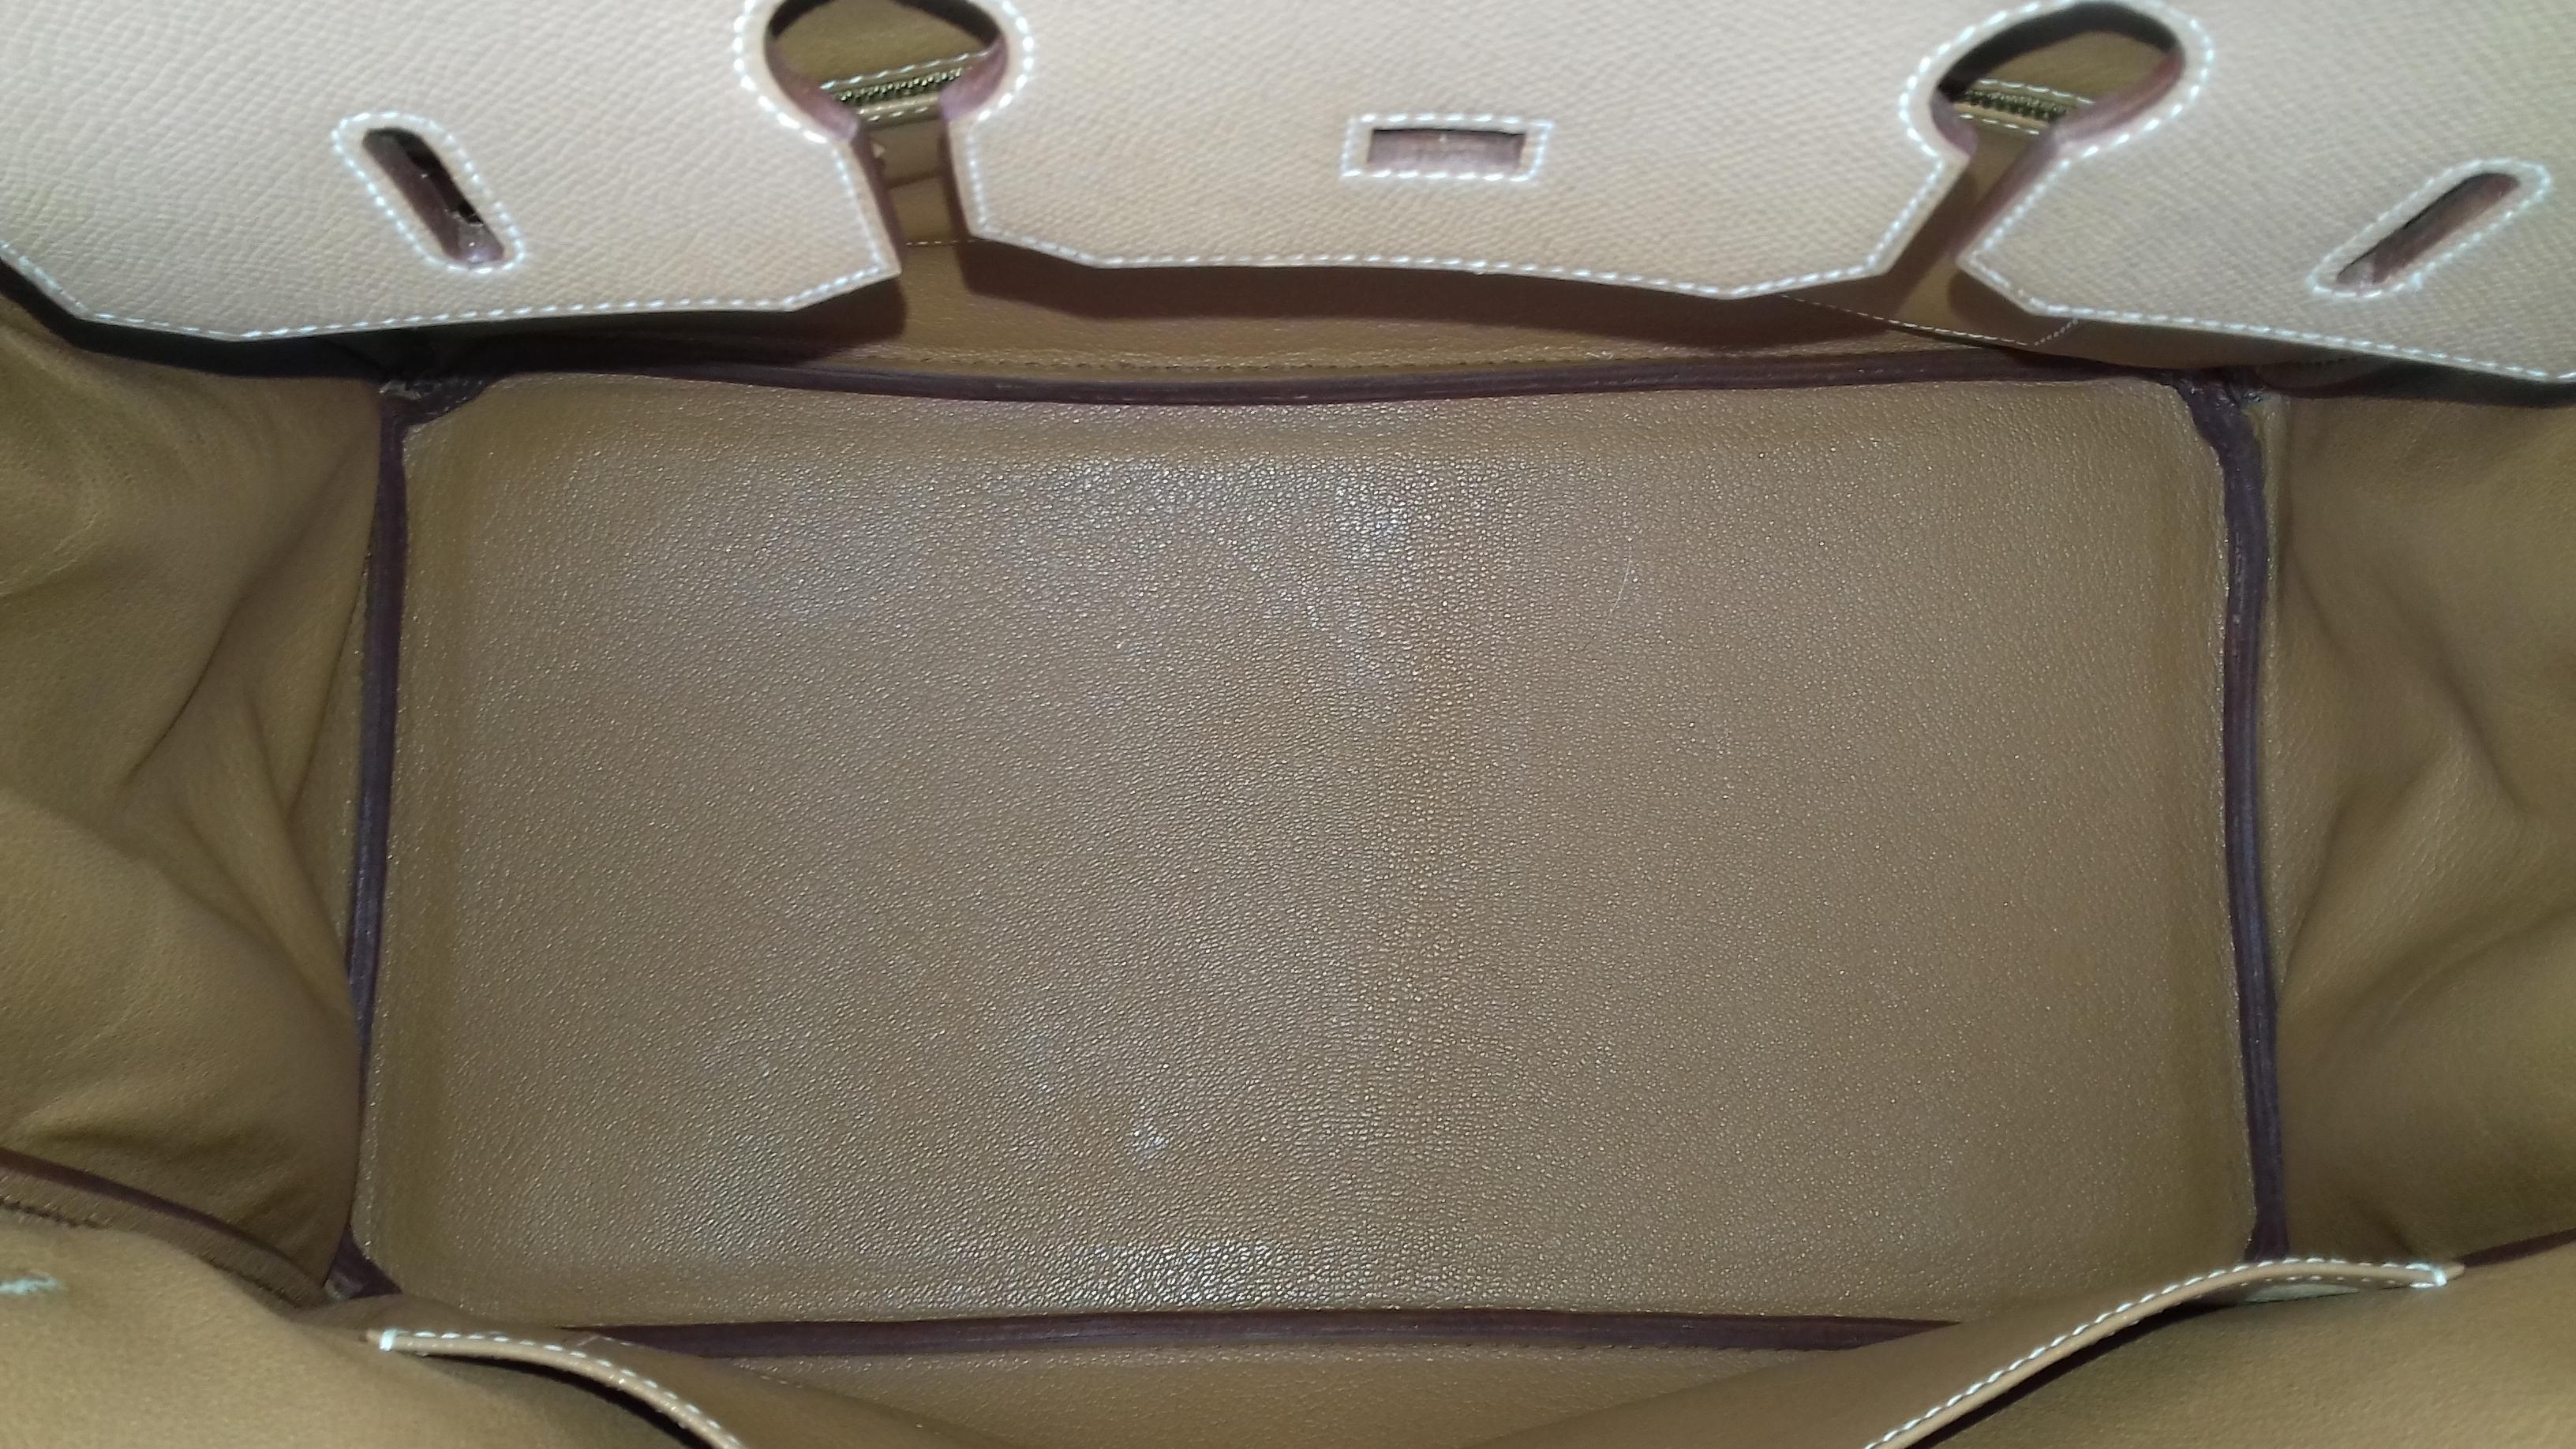 Hermès Birkin Top Handle Bag Naturel Epsom Leather Gold Hdw 35 cm 6